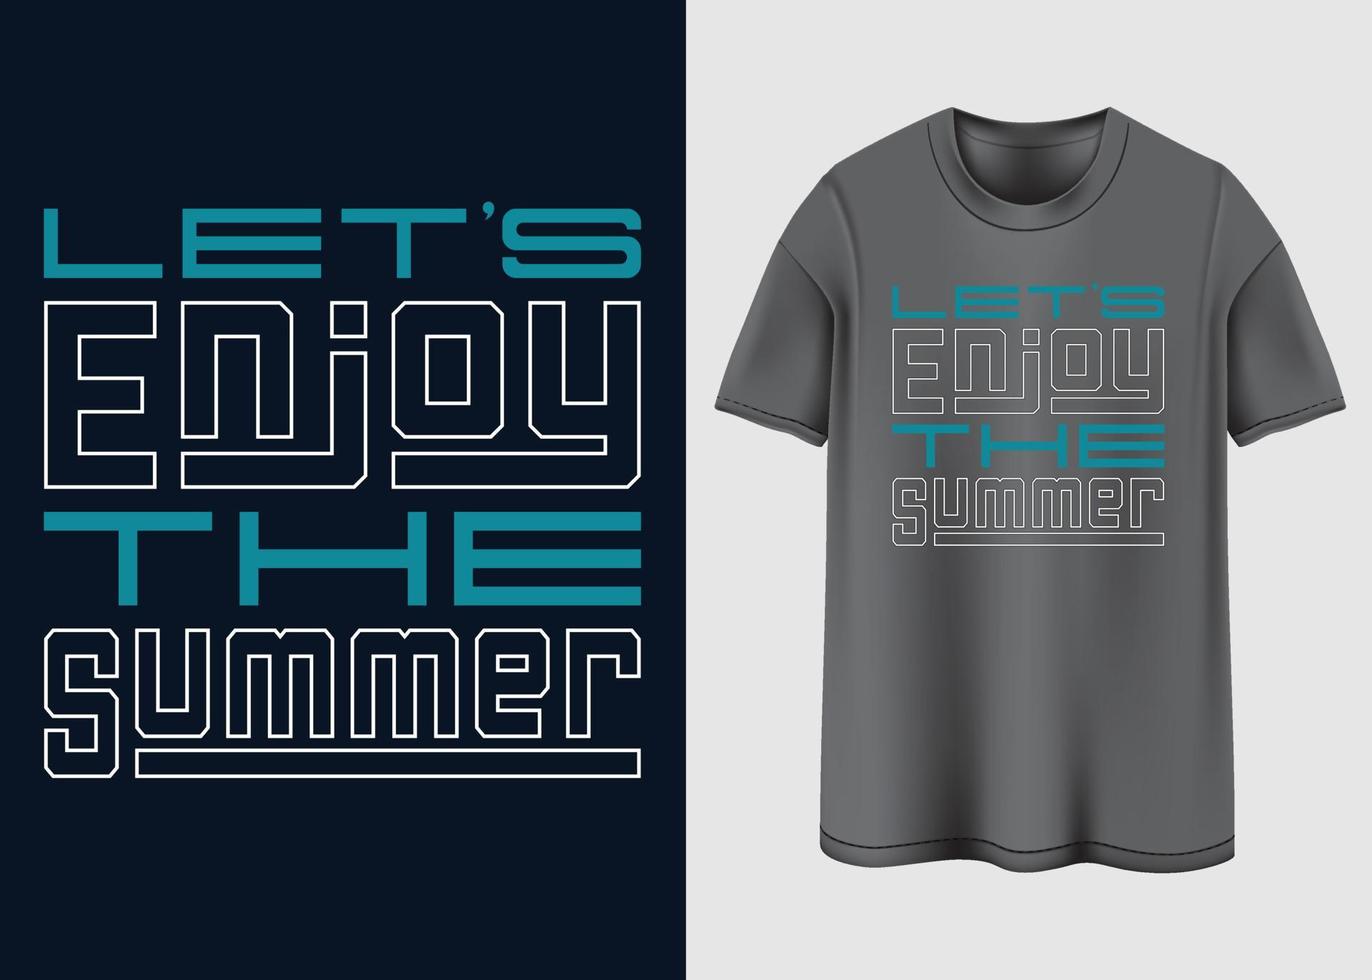 laten we genieten de zomer t-shirt ontwerp vector